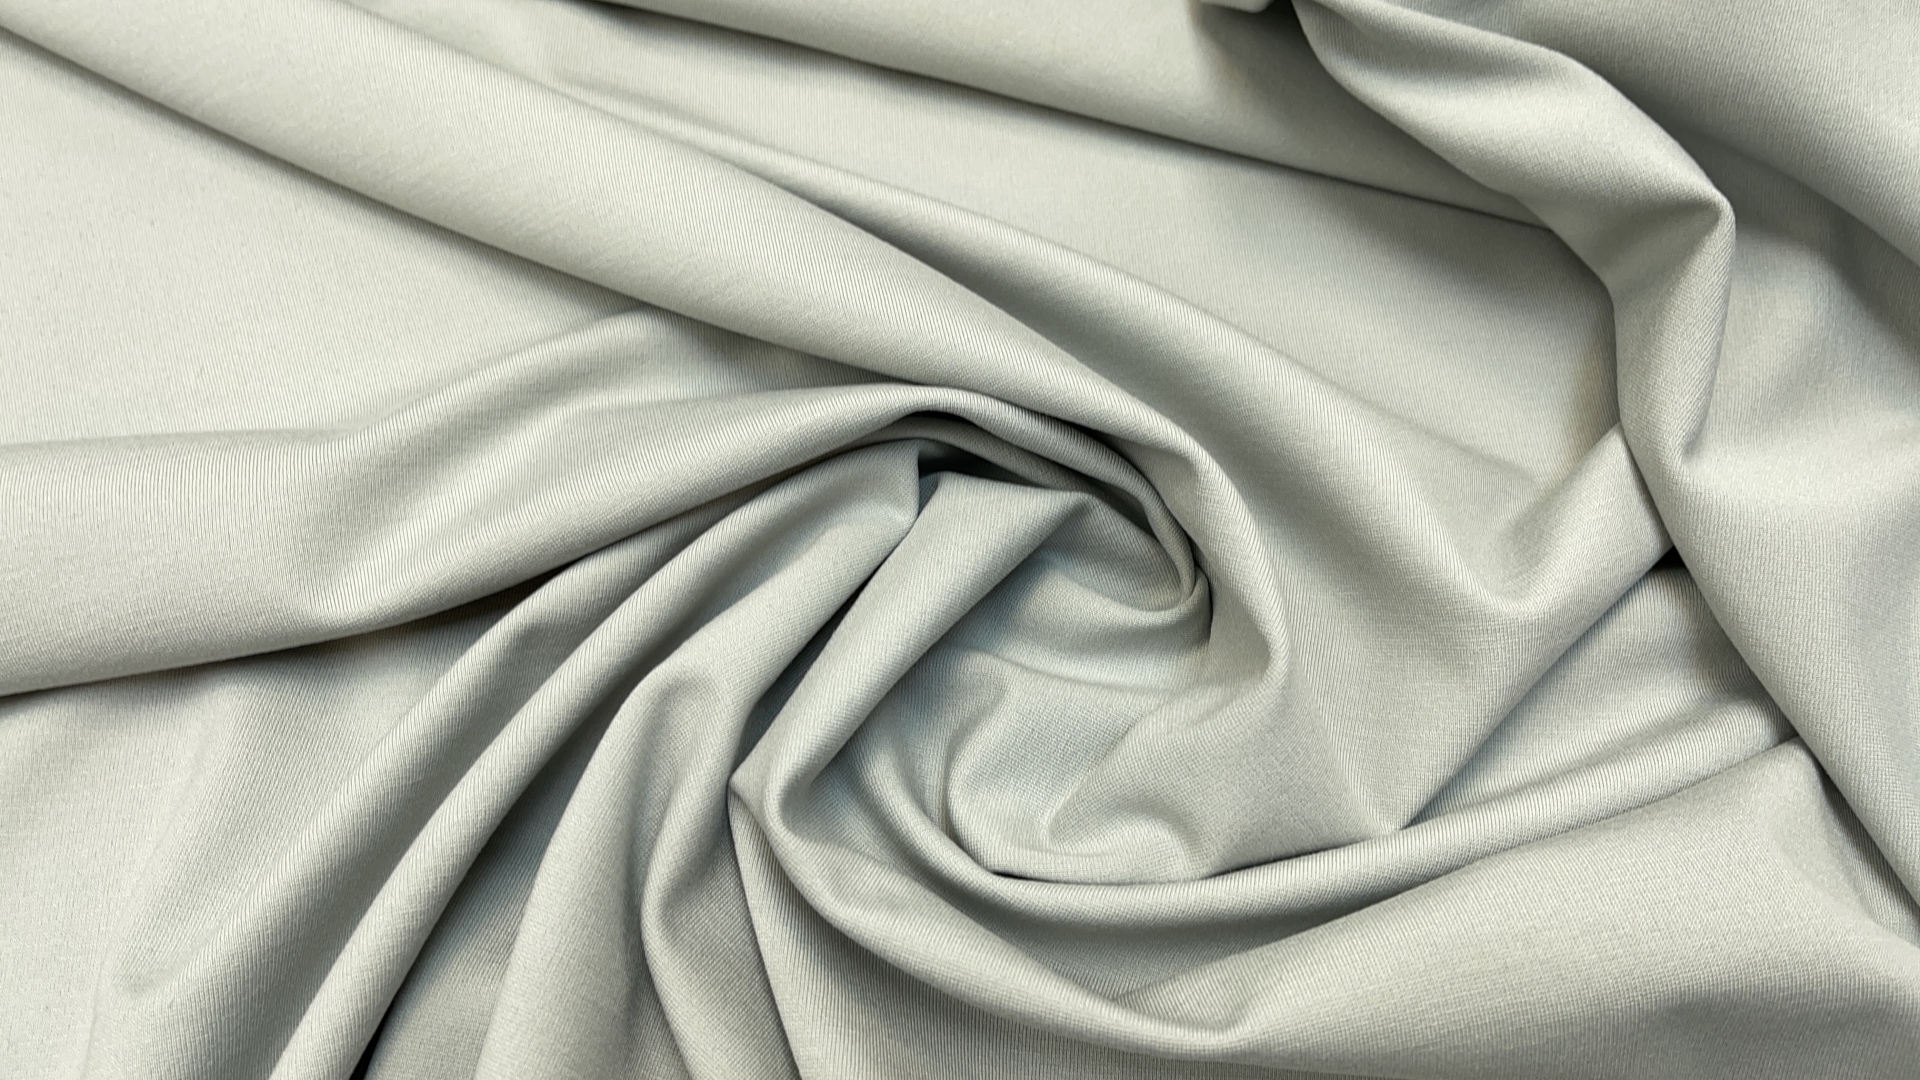 Джерси жемчужно-серого цвета из итальянского фабричного стока. Эластичное, тянется в четыре стороны. Идеально для базового платья любого силуэта. Также можно шить спортивные брючки.